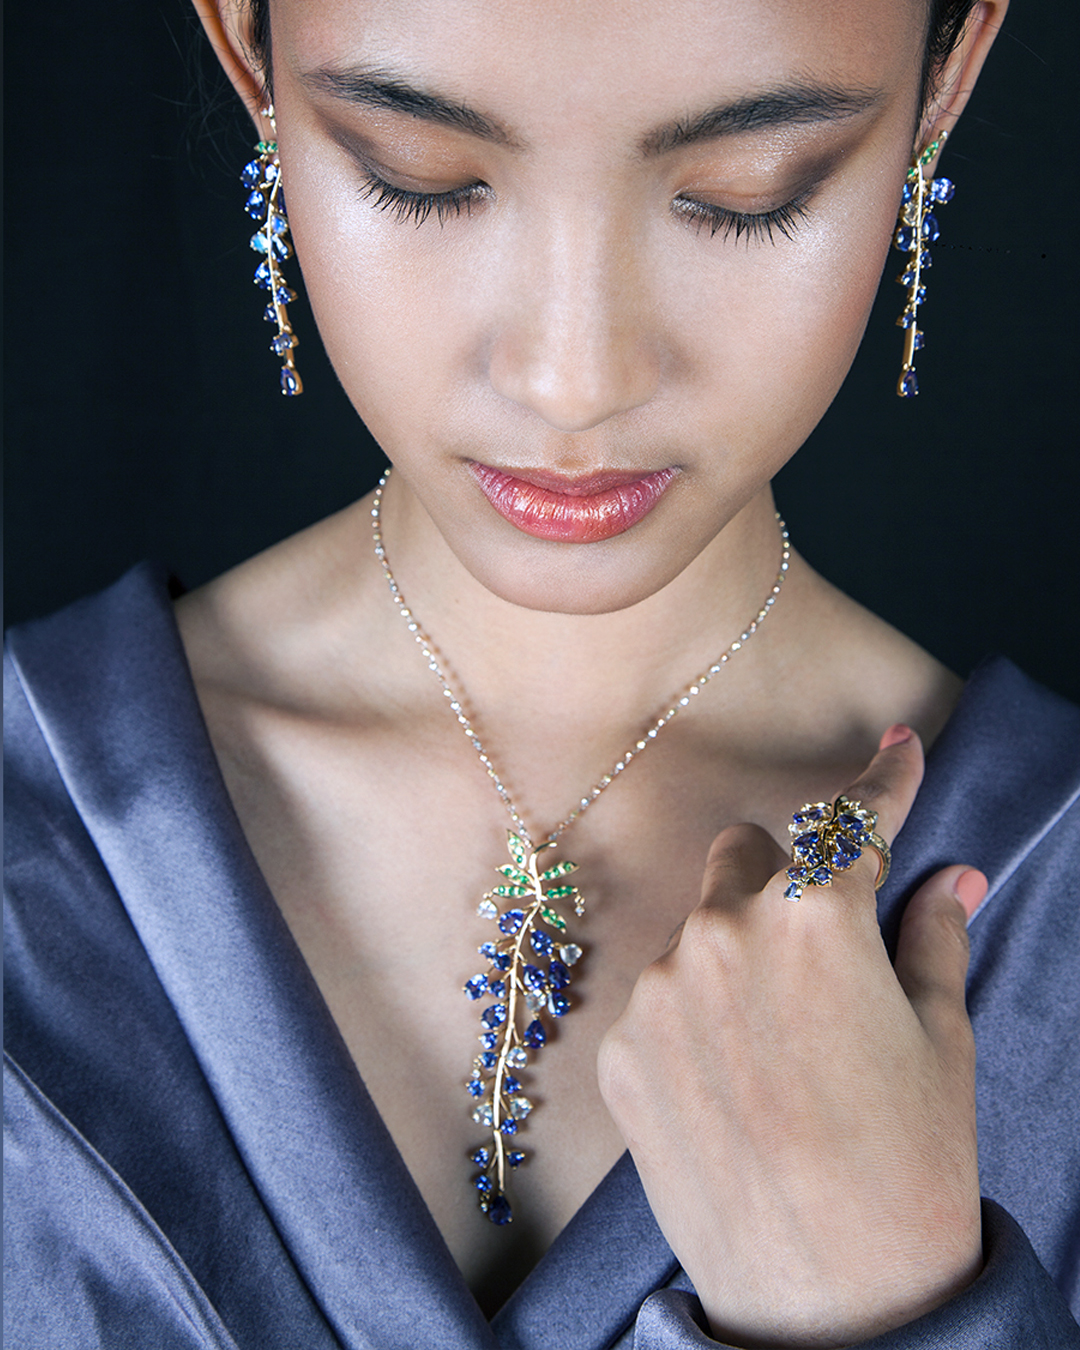 Sharika wearing jewellery by Tashiro Kazumi